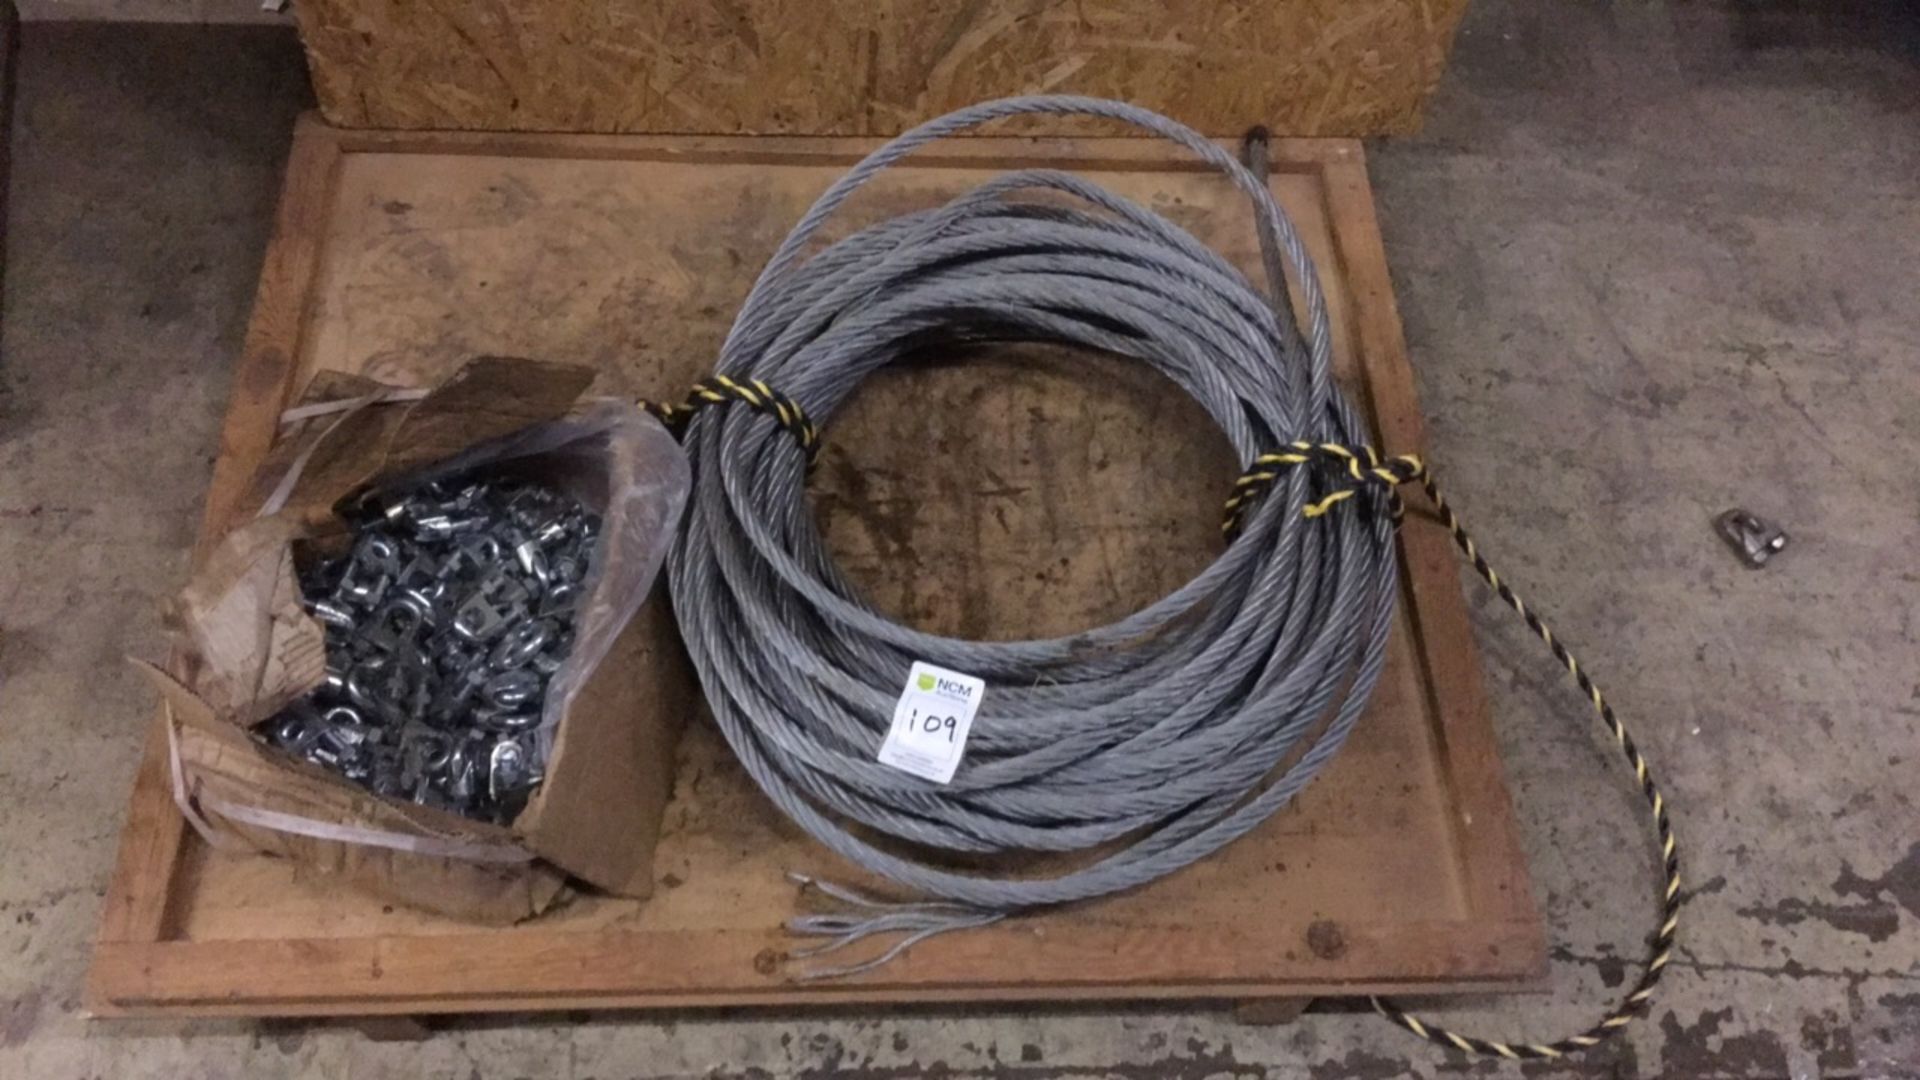 Steel bonding/lashing rope & grips - Image 2 of 2